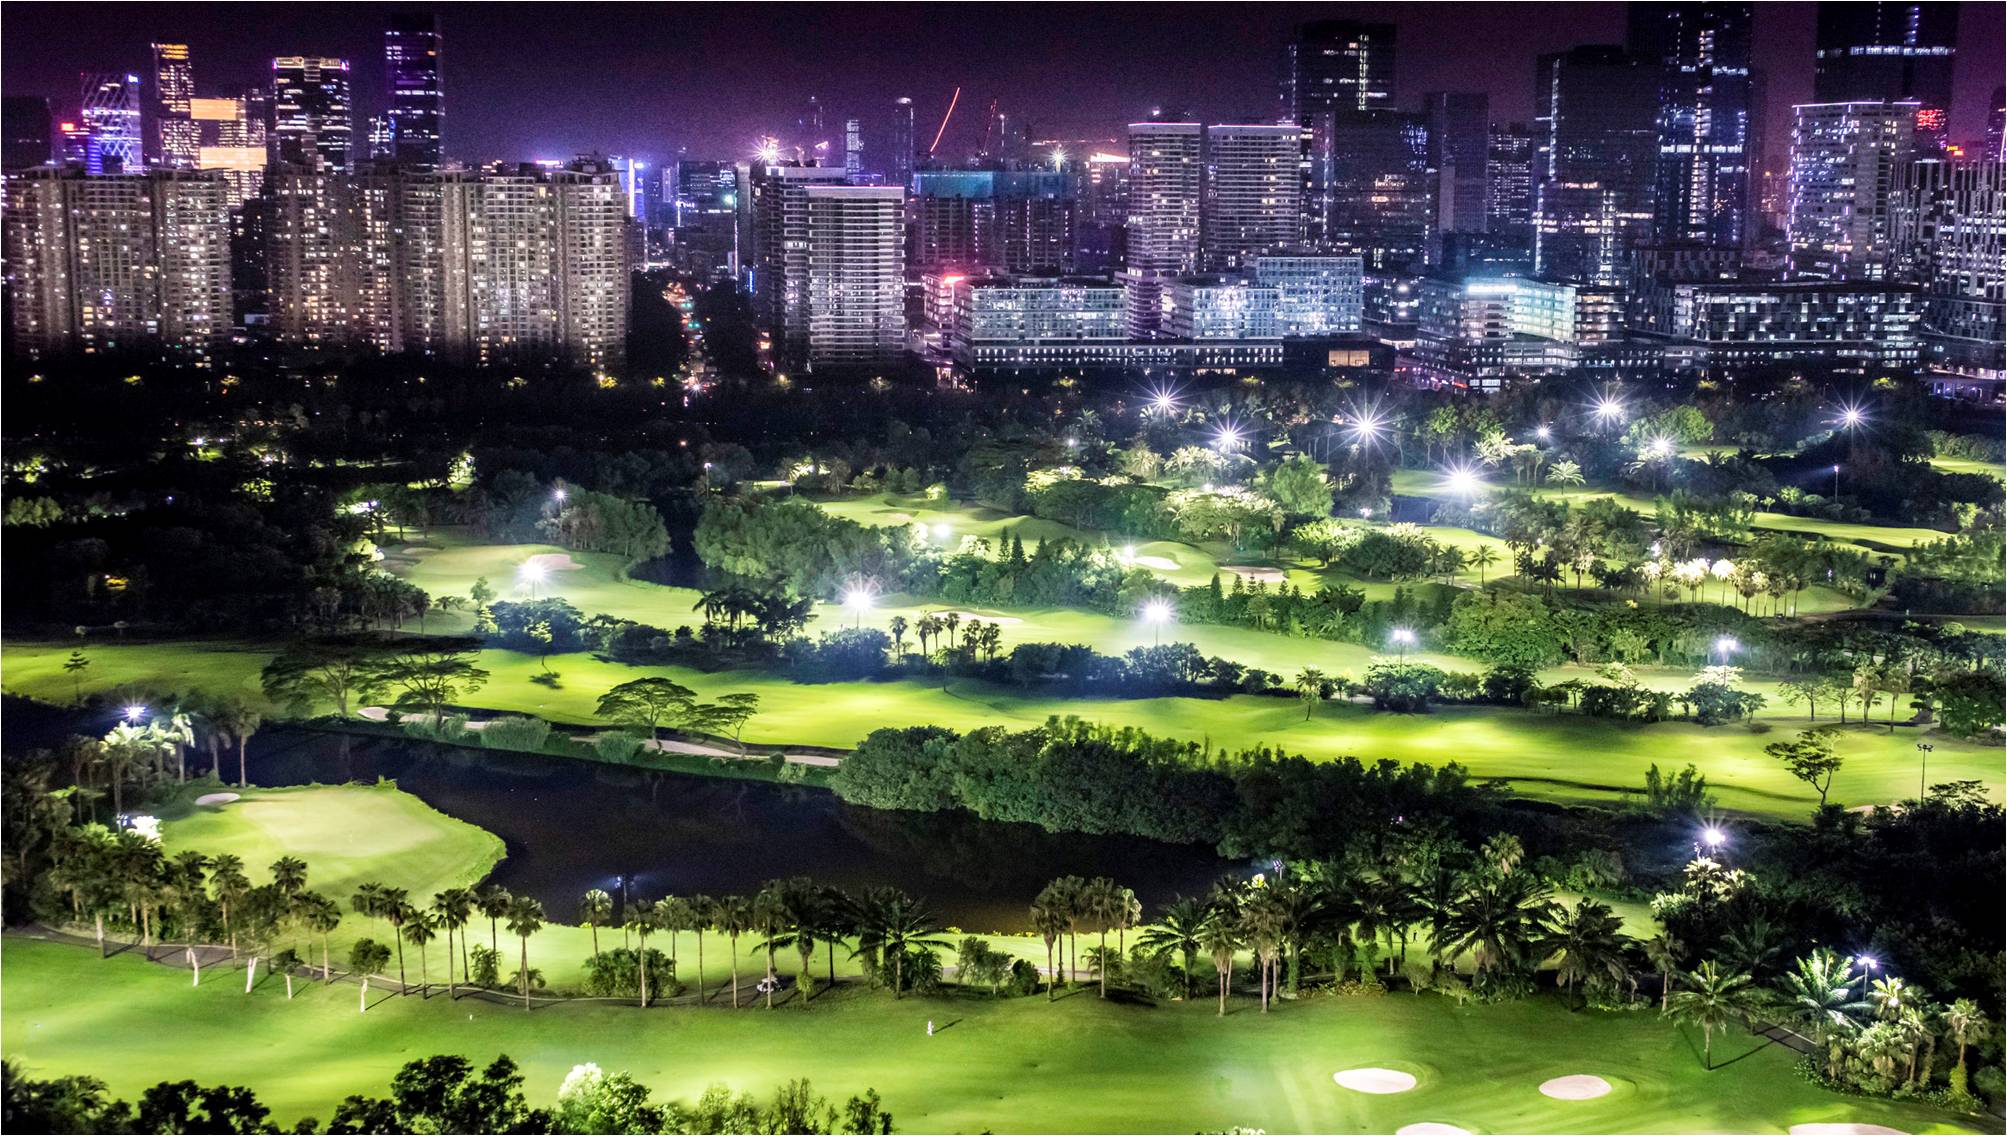 深圳沙河高尔夫球会夜场灯光照明效果